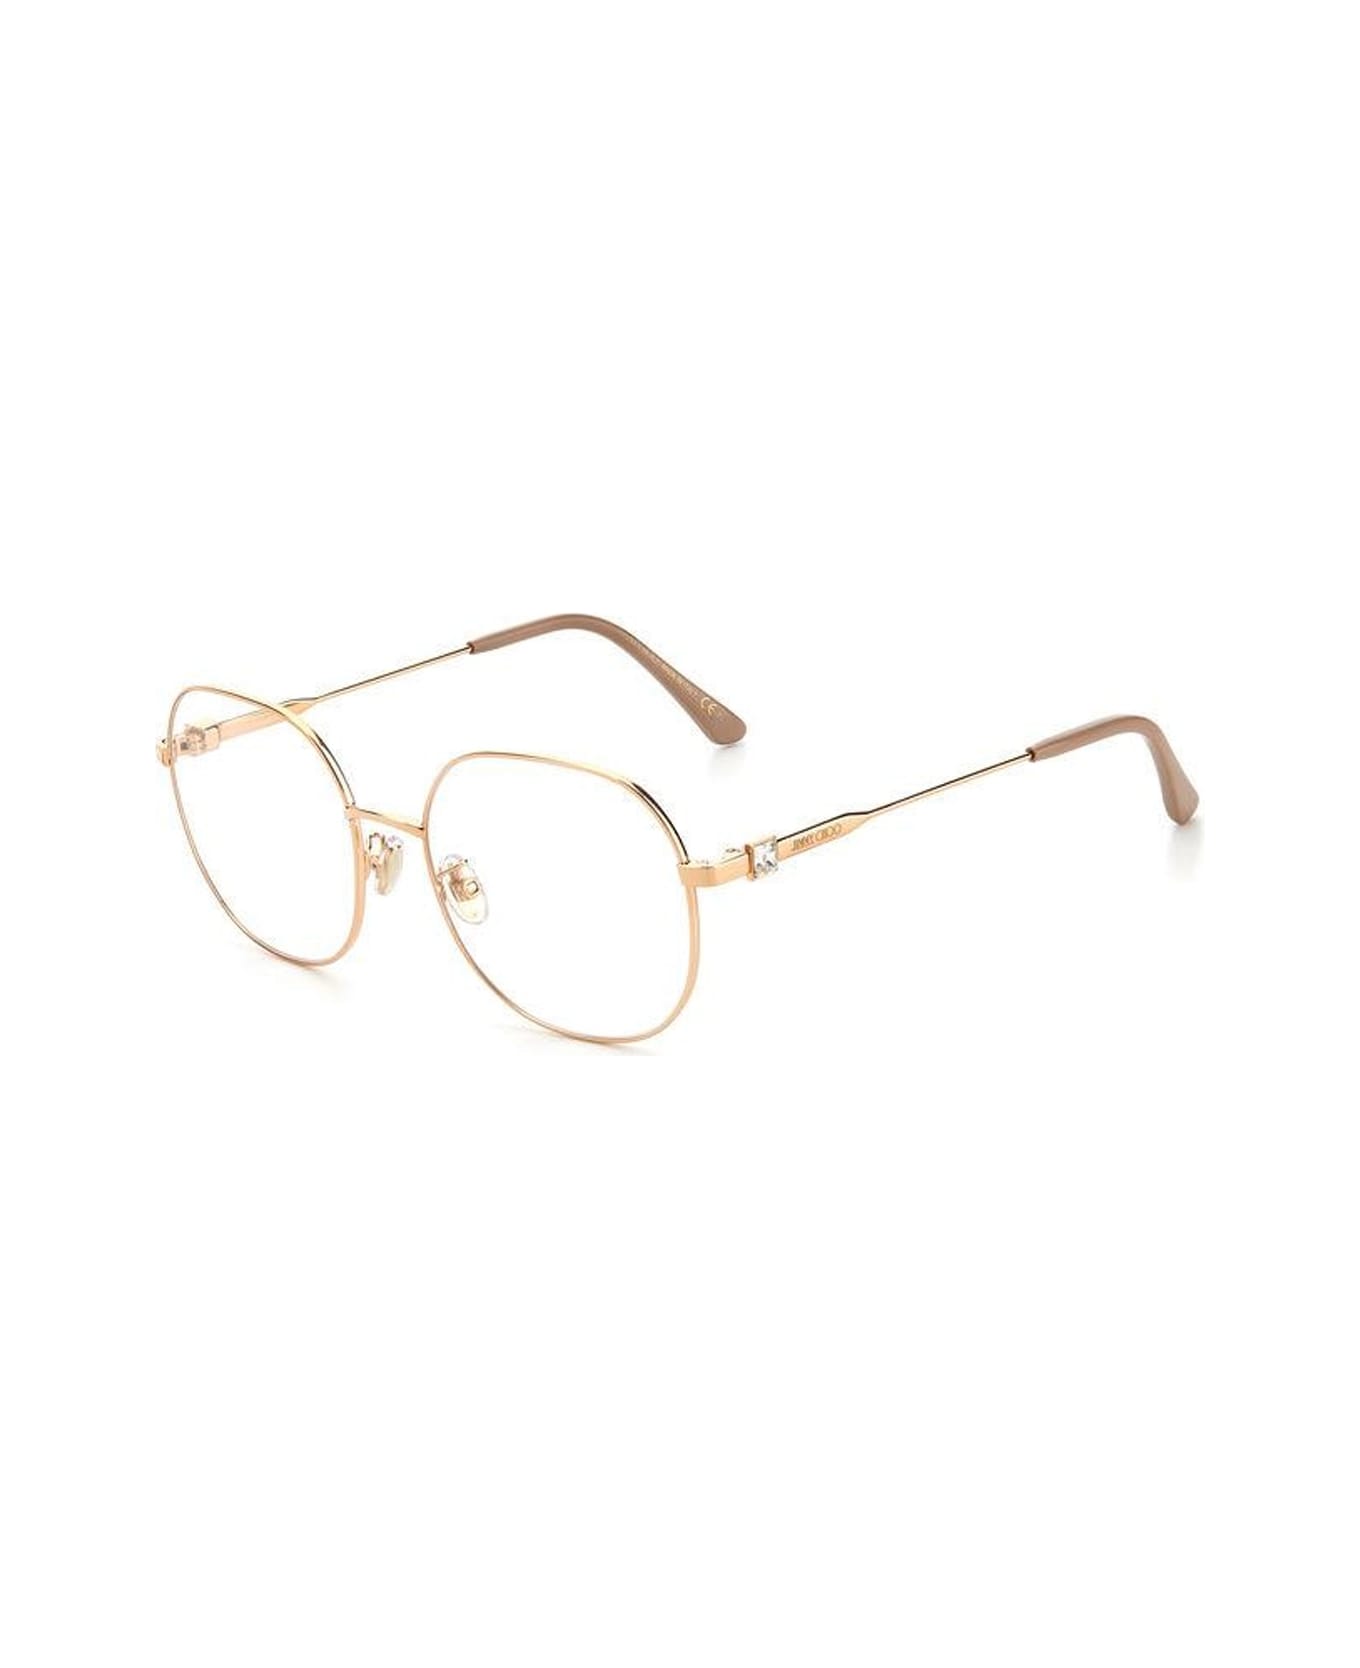 Jimmy Choo Eyewear Jc305/g Glasses - Oro アイウェア